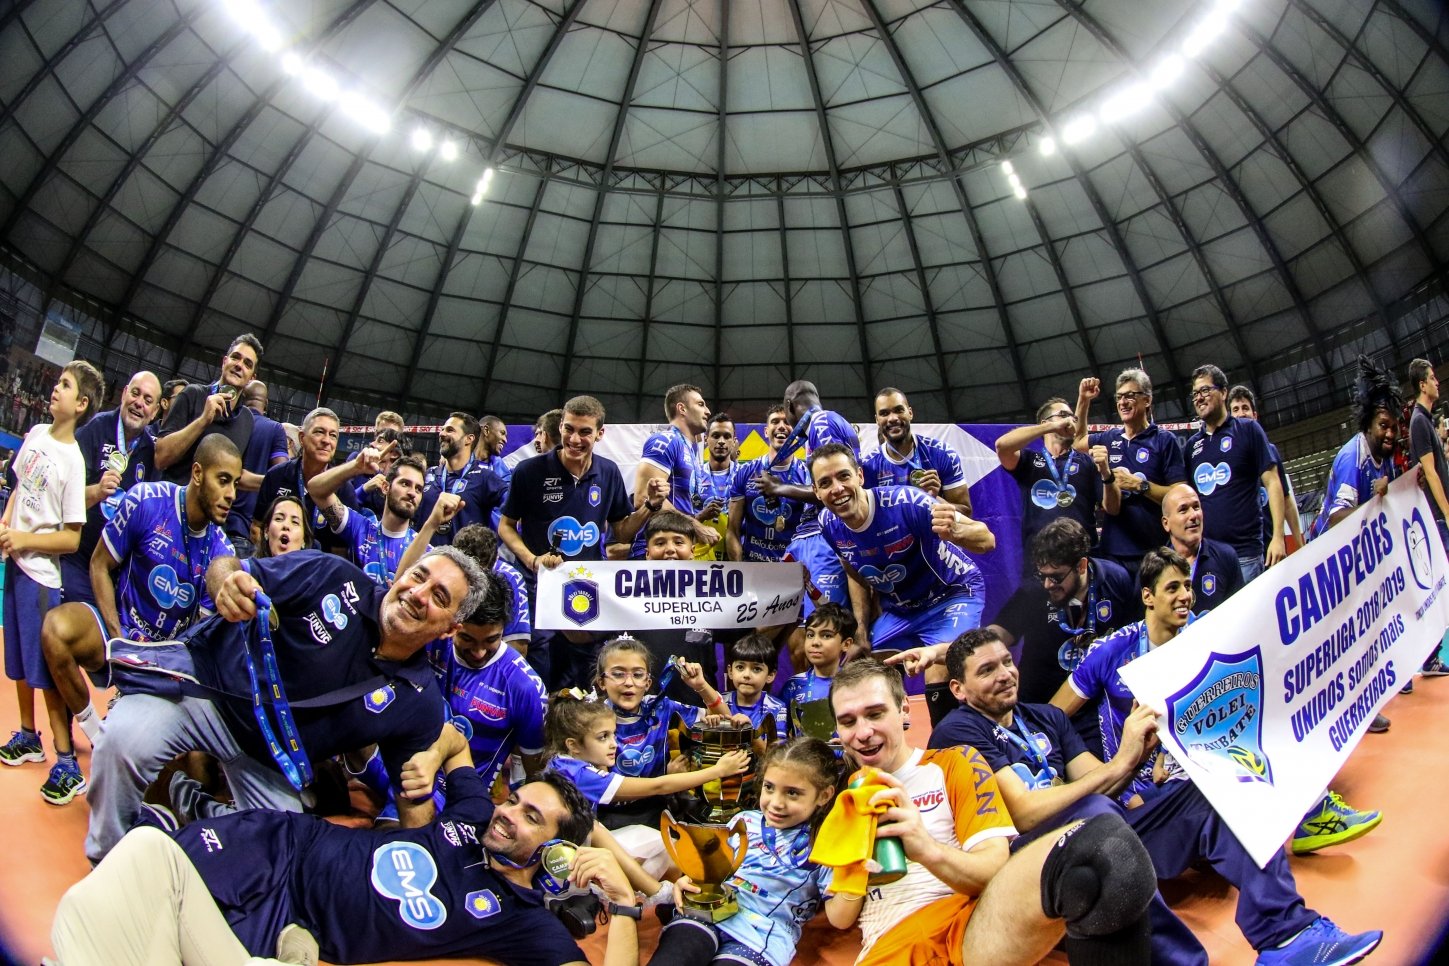 Athos Costa e Renan Michelucci são campeões da Superliga Masculina 18/19 com o Taubaté. Foto: CBV